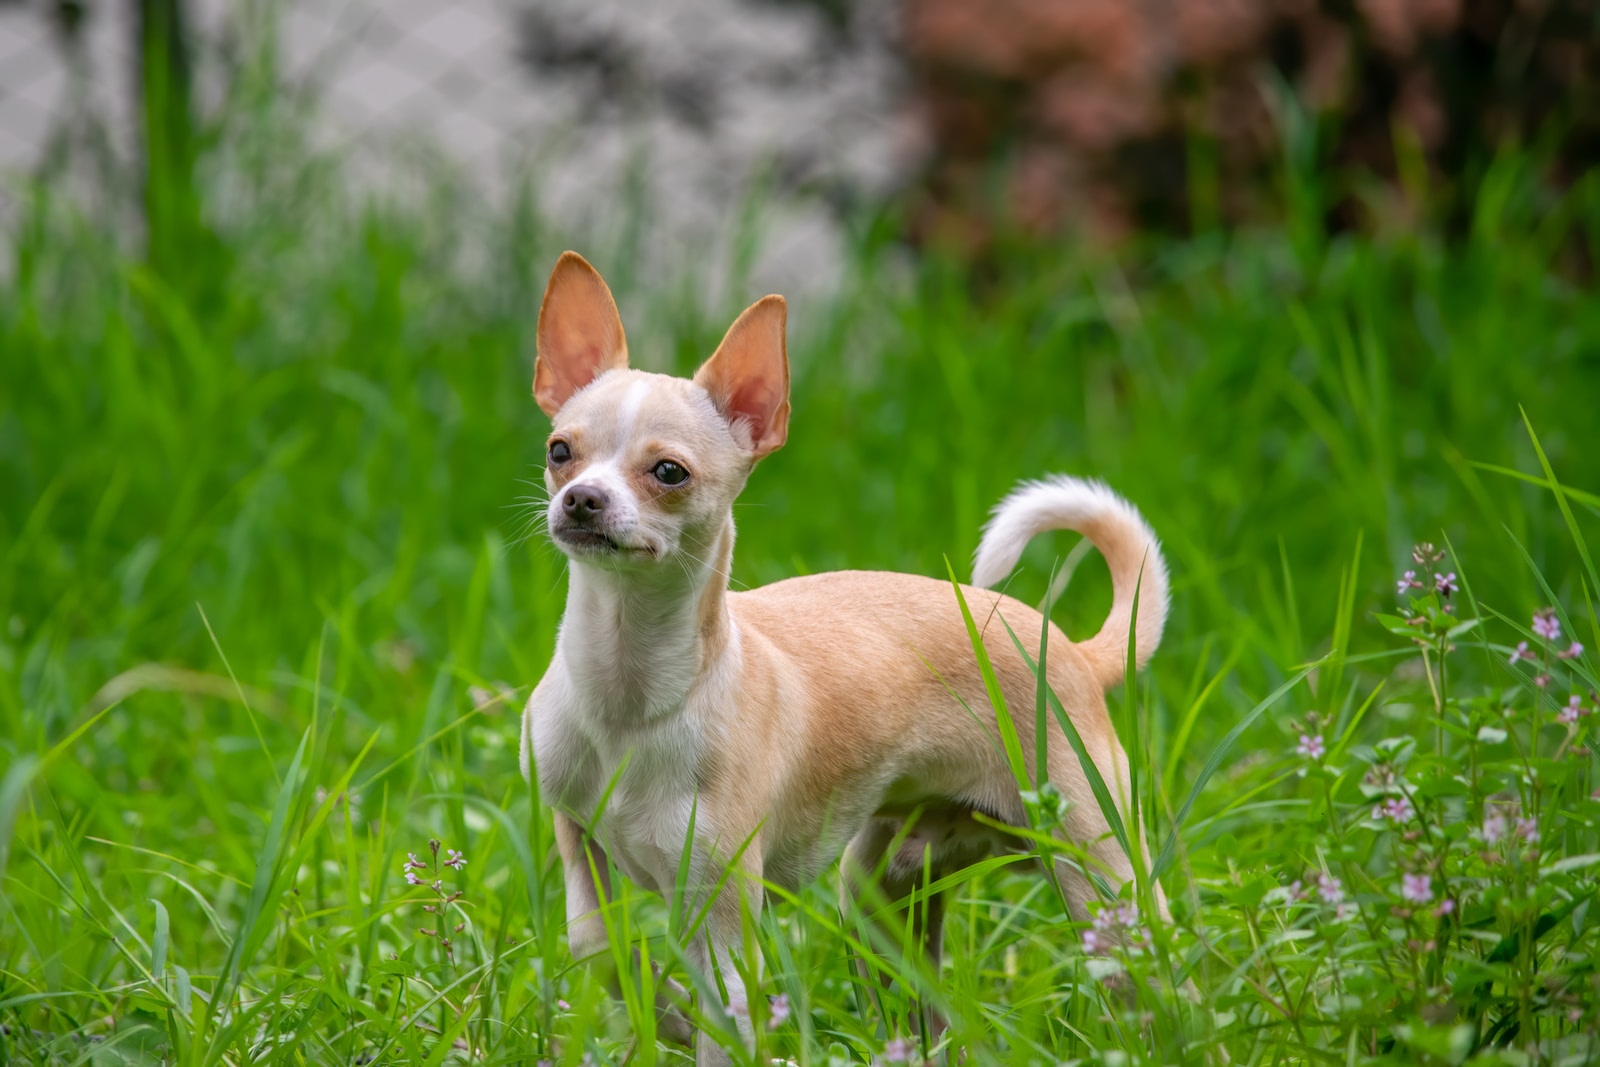 Charming Companions: Why Kids Love Chihuahuas as Pets